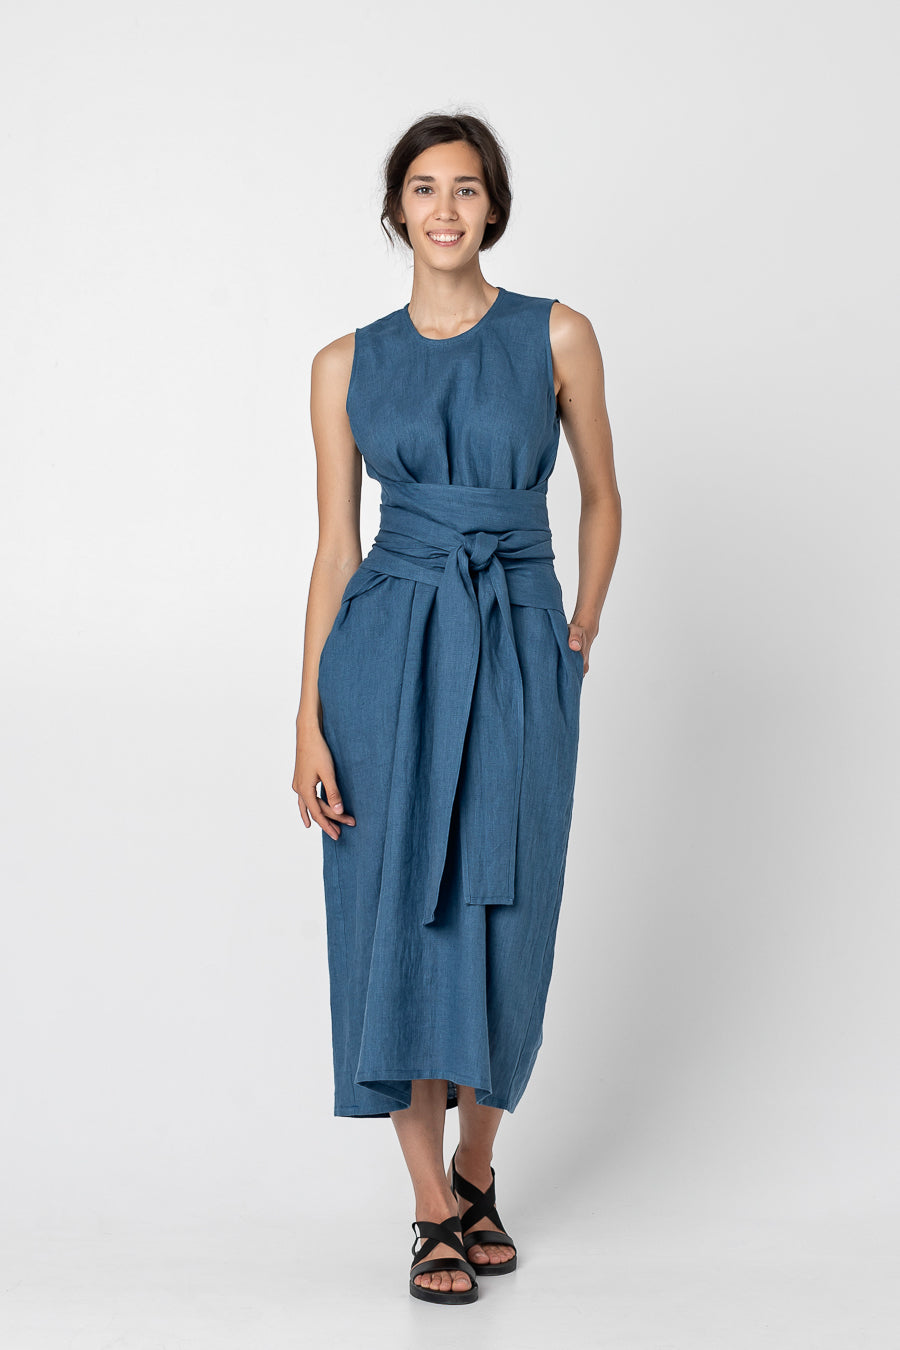 KIRA | Sleeveless linen dress